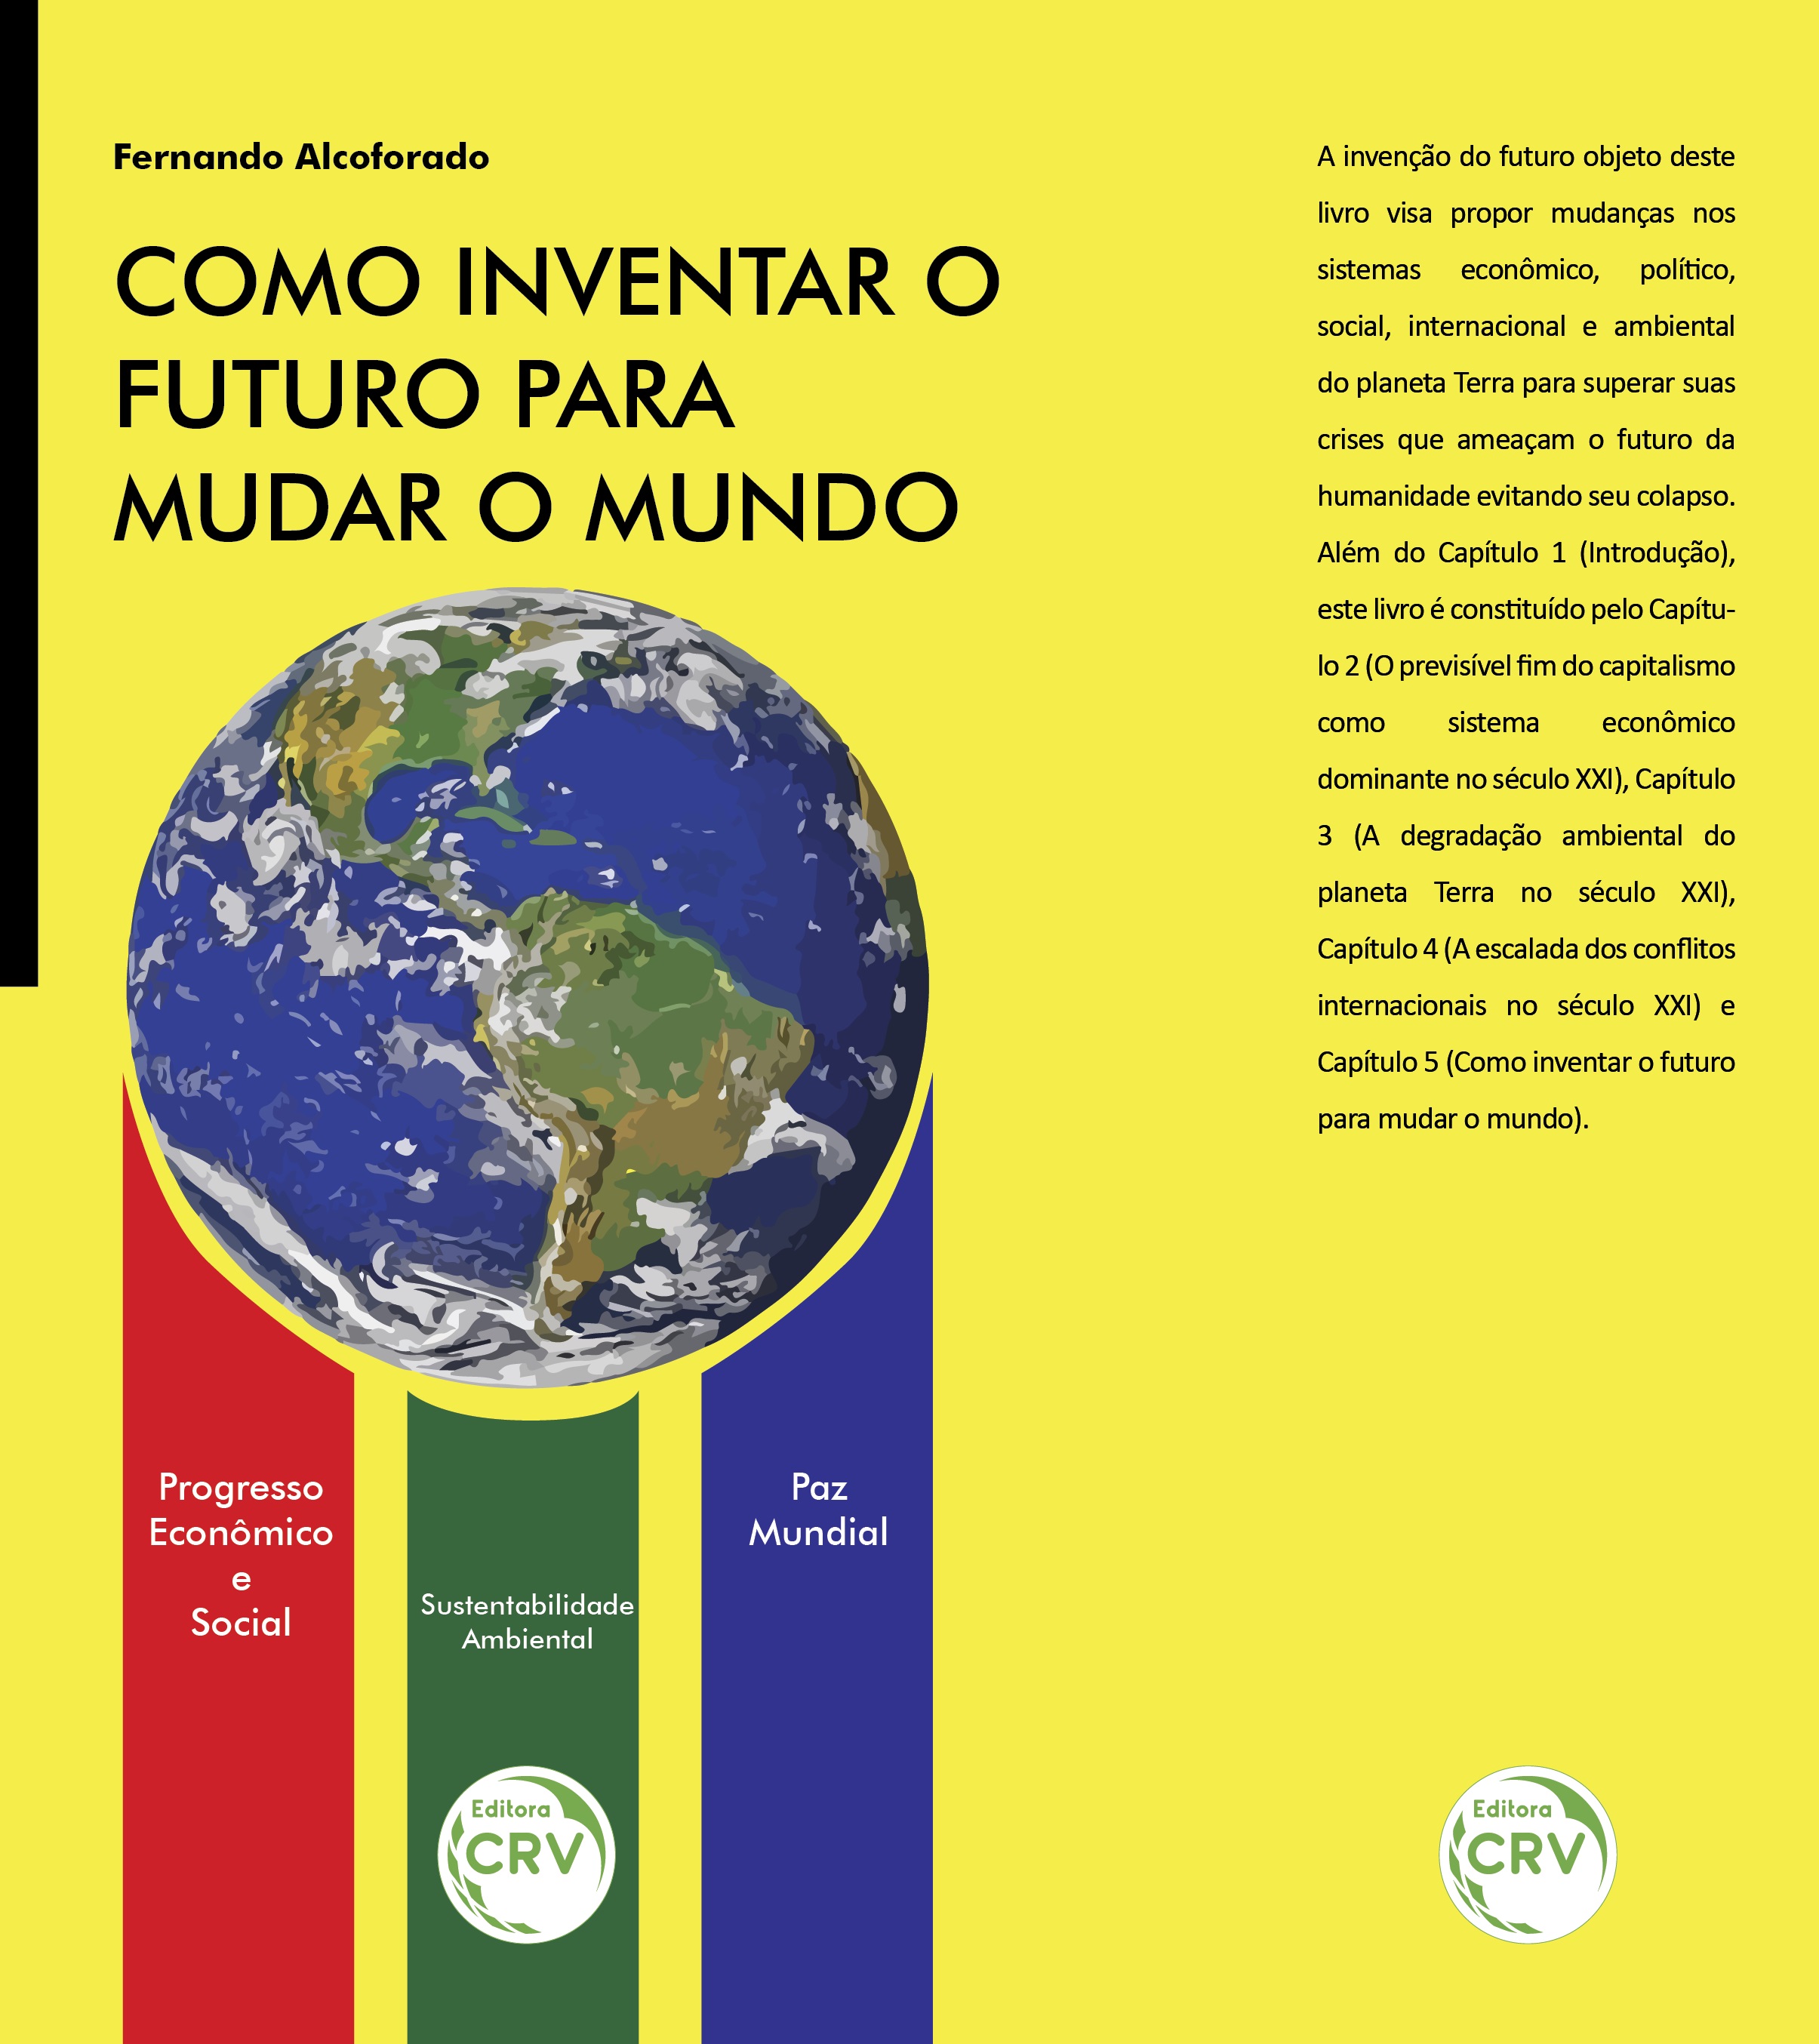 Engenheiro Fernando Alcoforado lança livro “Como inventar o futuro para mudar o mundo” no IGHB